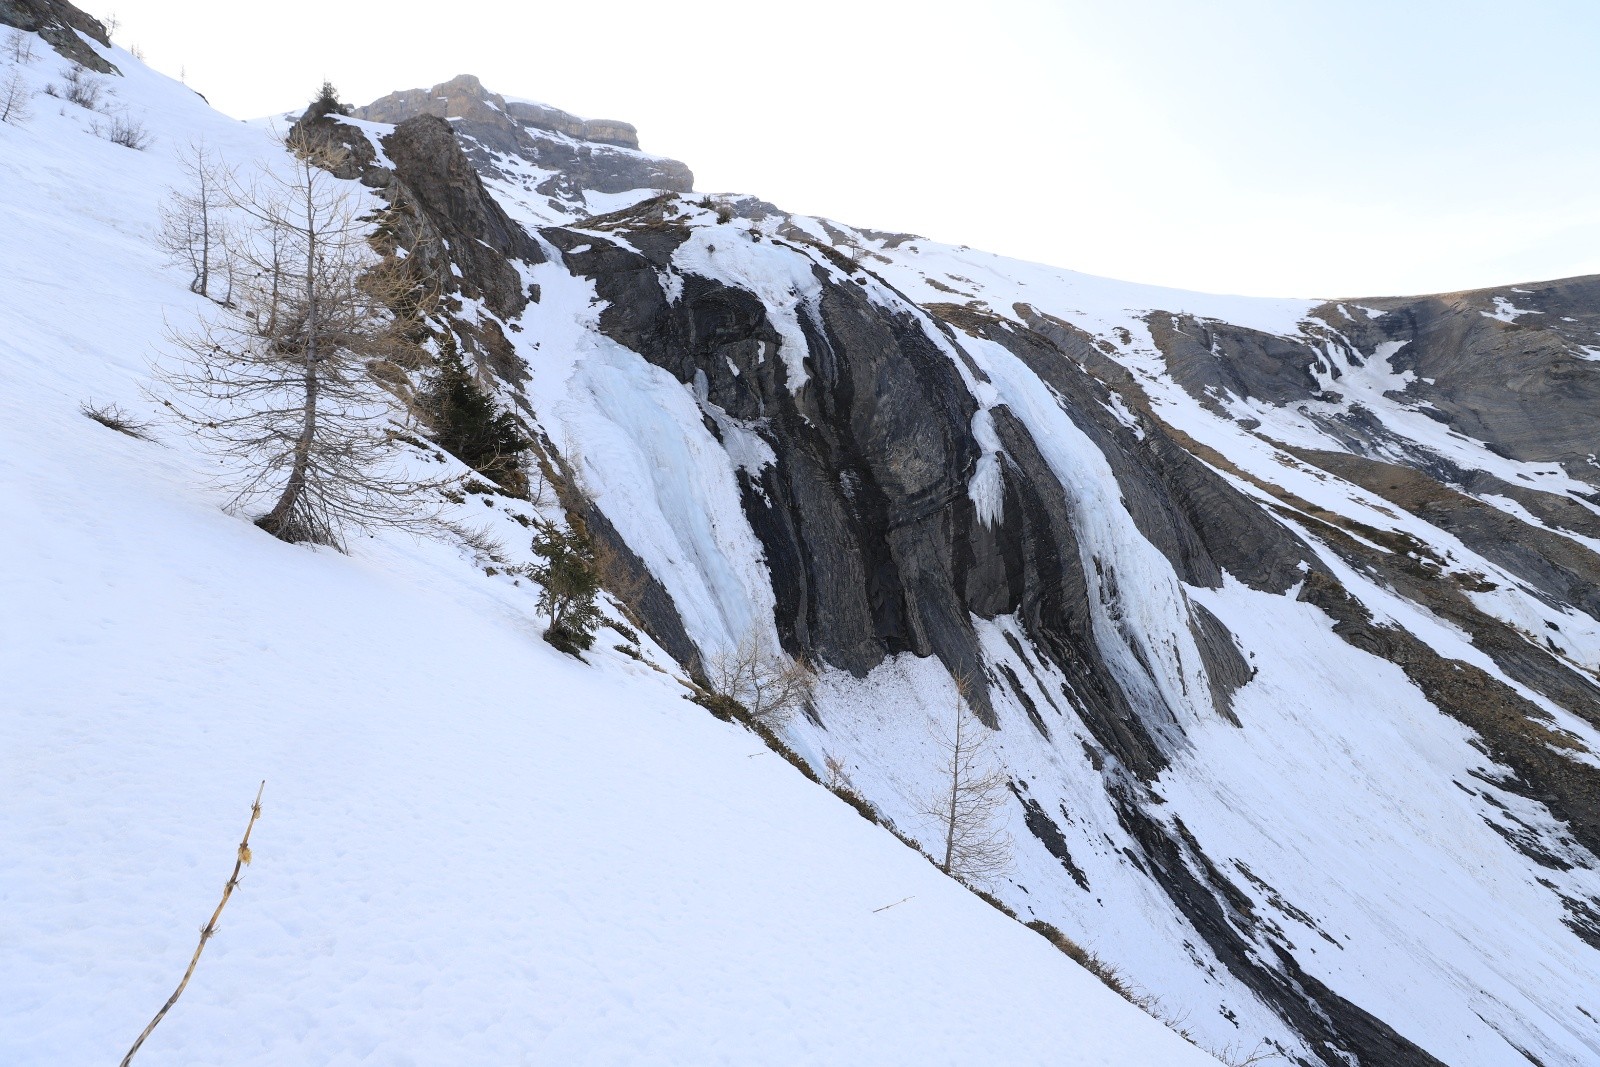  Les belles cascades de glace du vallon de descente